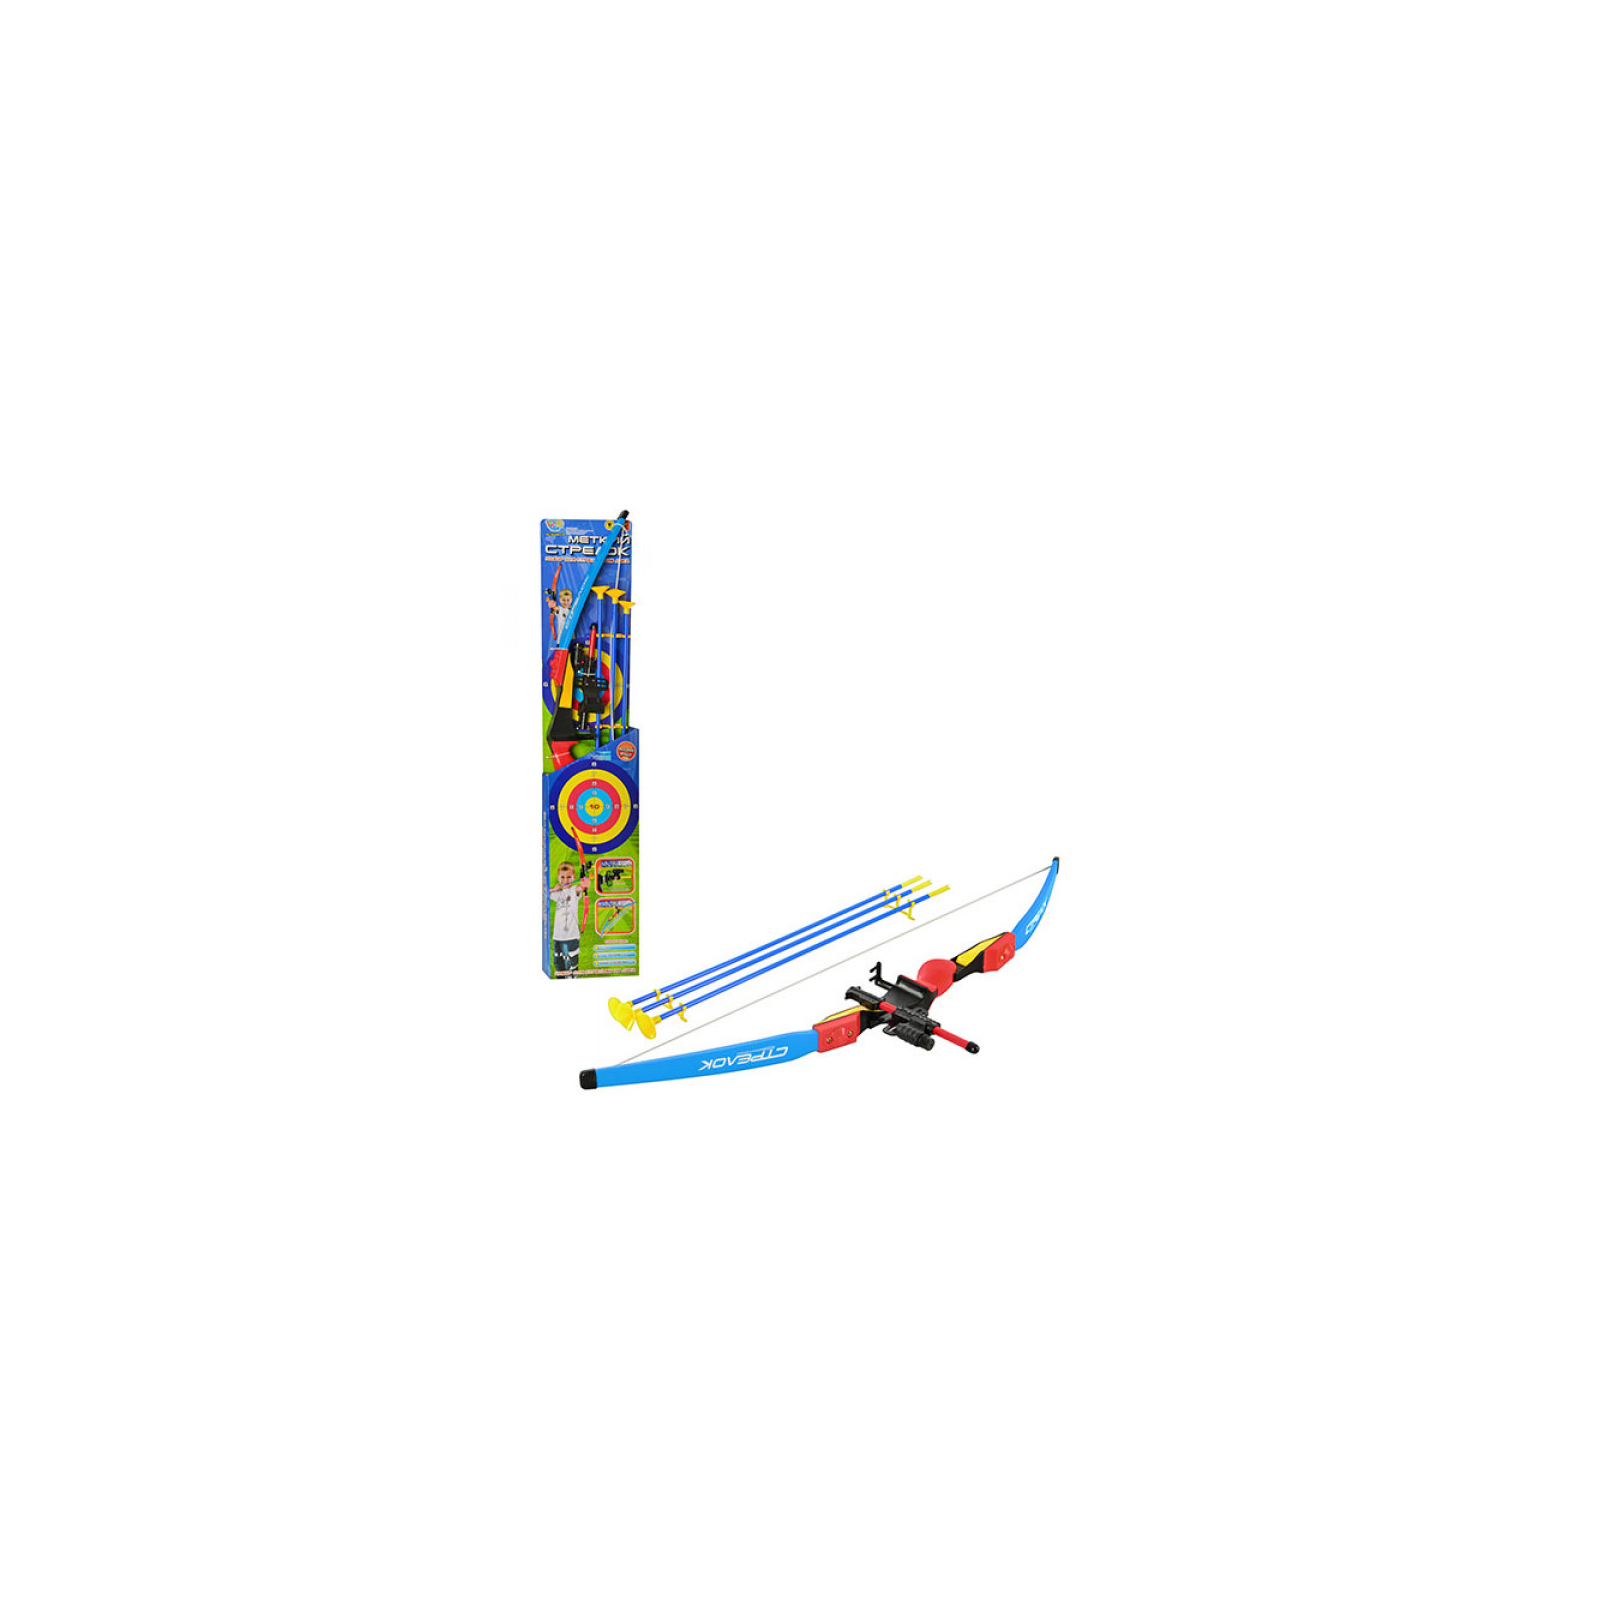 Игрушечное оружие Limo Toy Детский лук (M 0006 U/R)